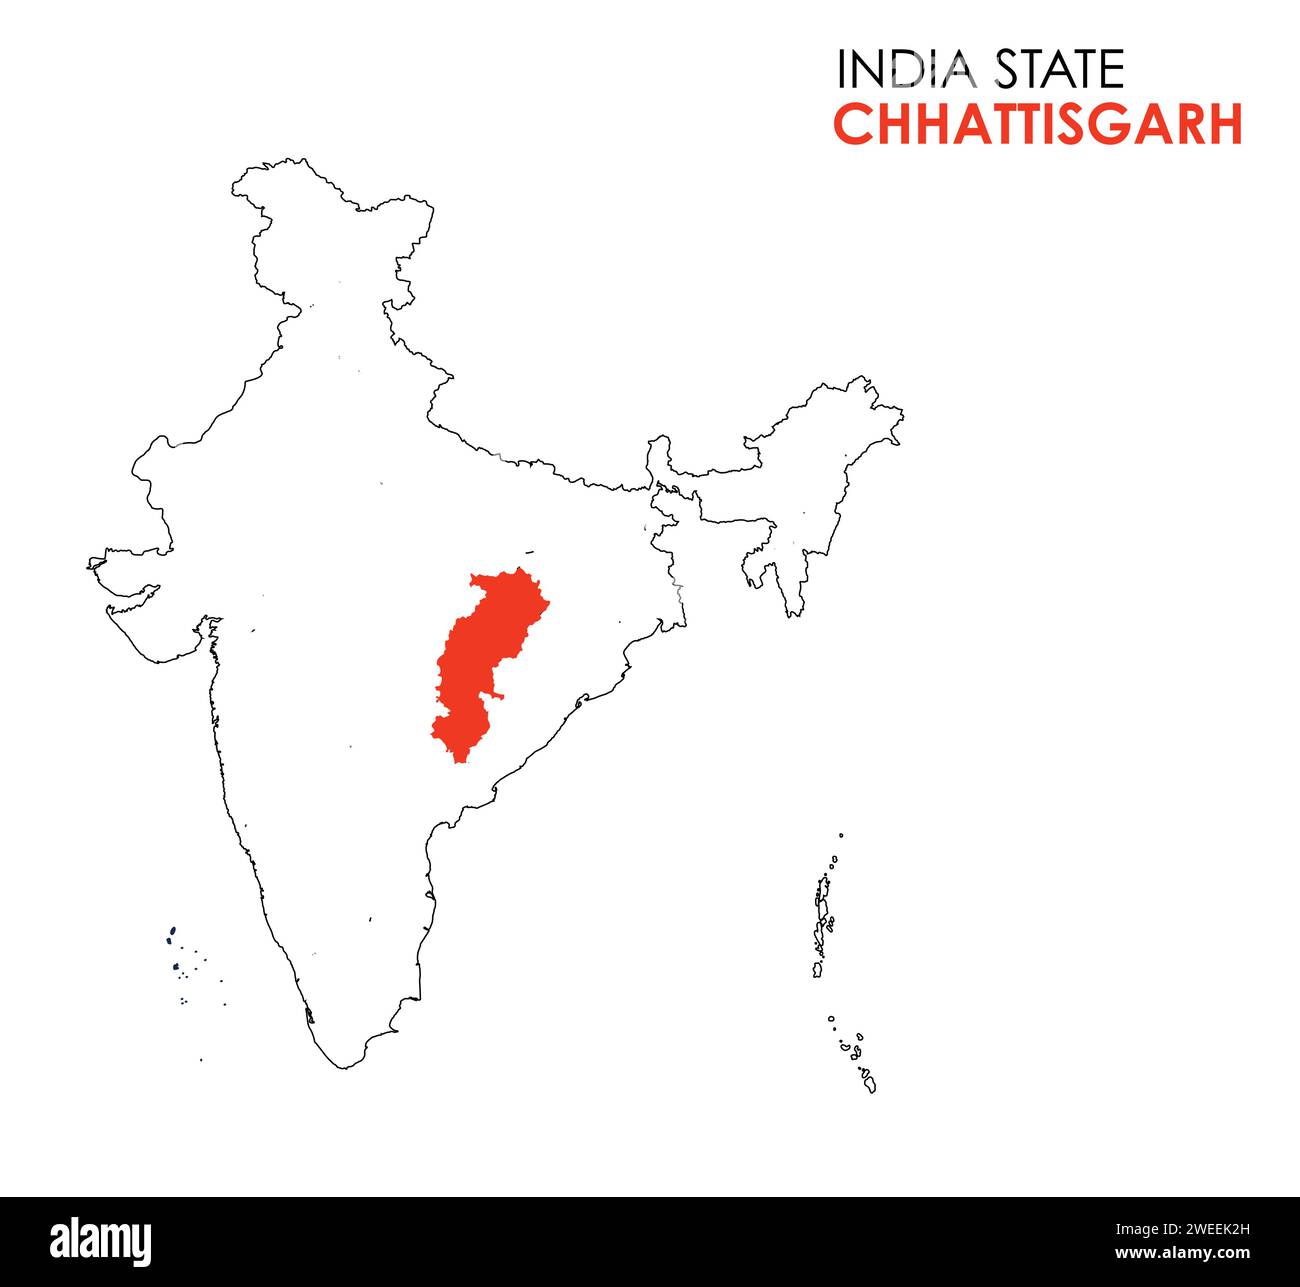 Carte Chhattisgarh de l'état indien. Illustration de la carte de Chhattisgarh. Fond blanc. Illustration de Vecteur